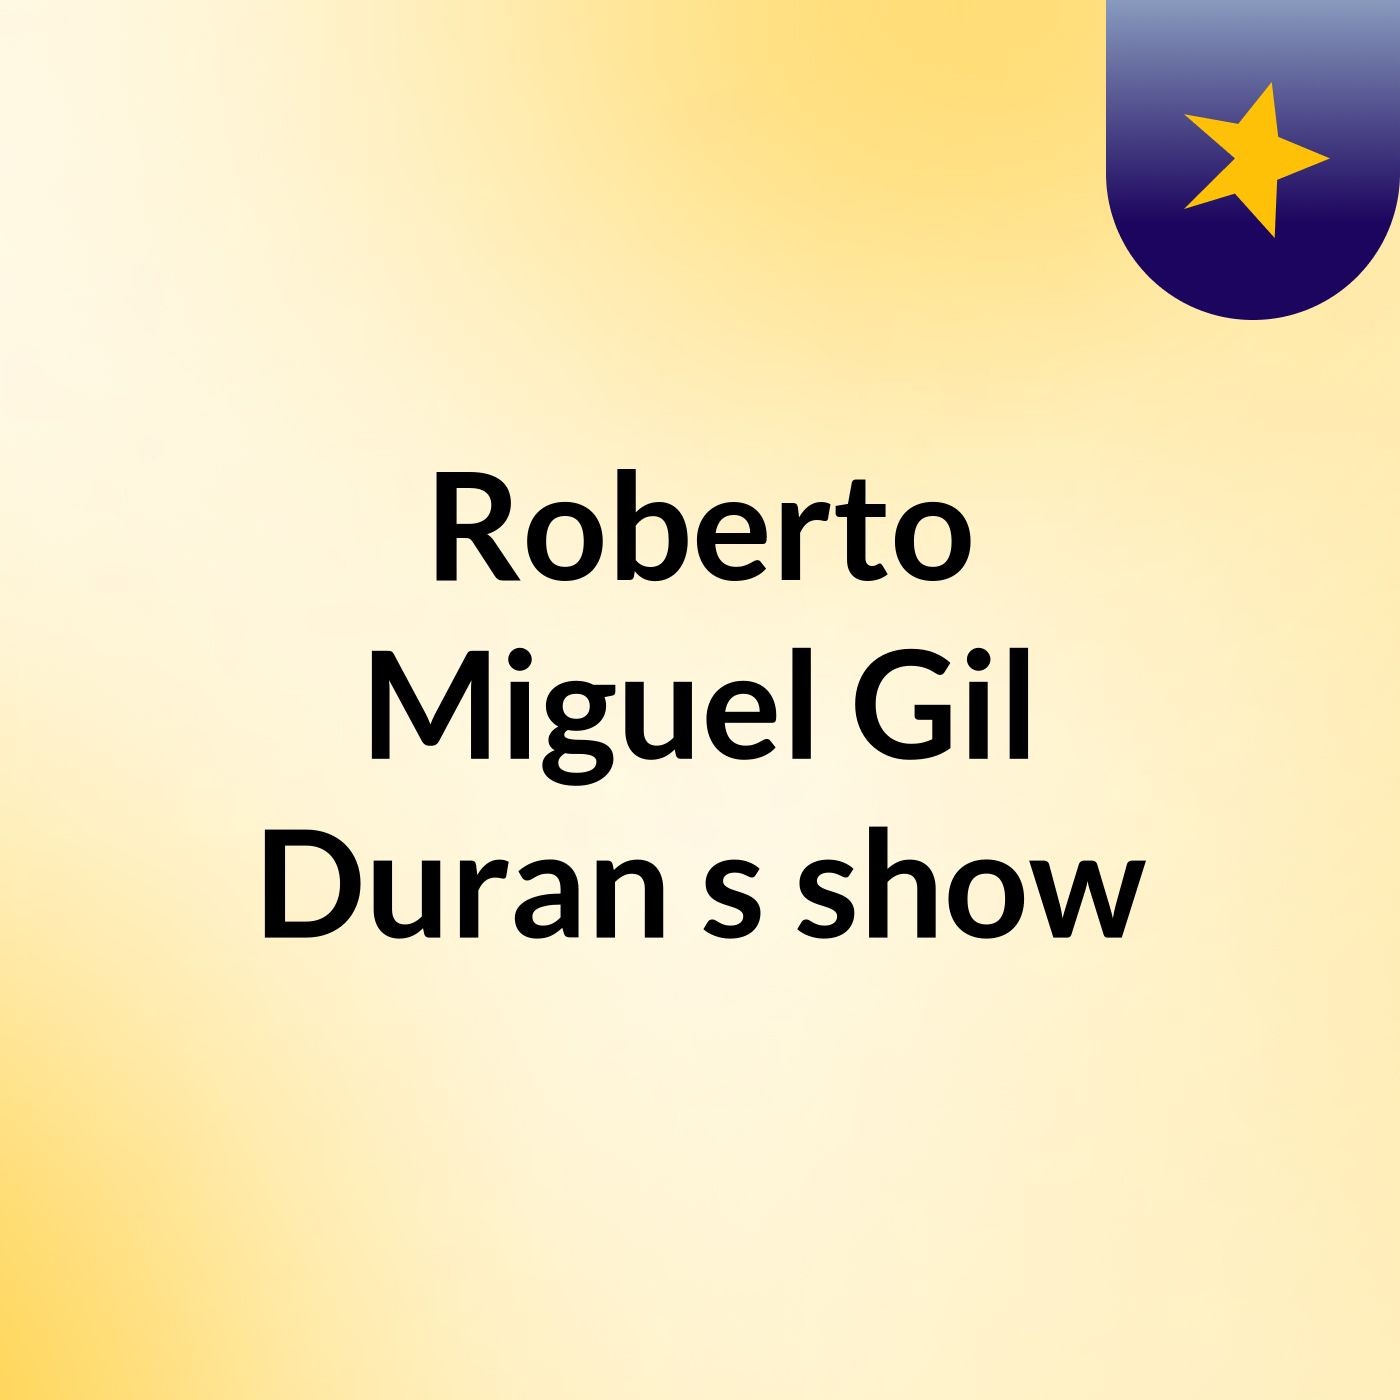 Roberto Miguel Gil Duran's show